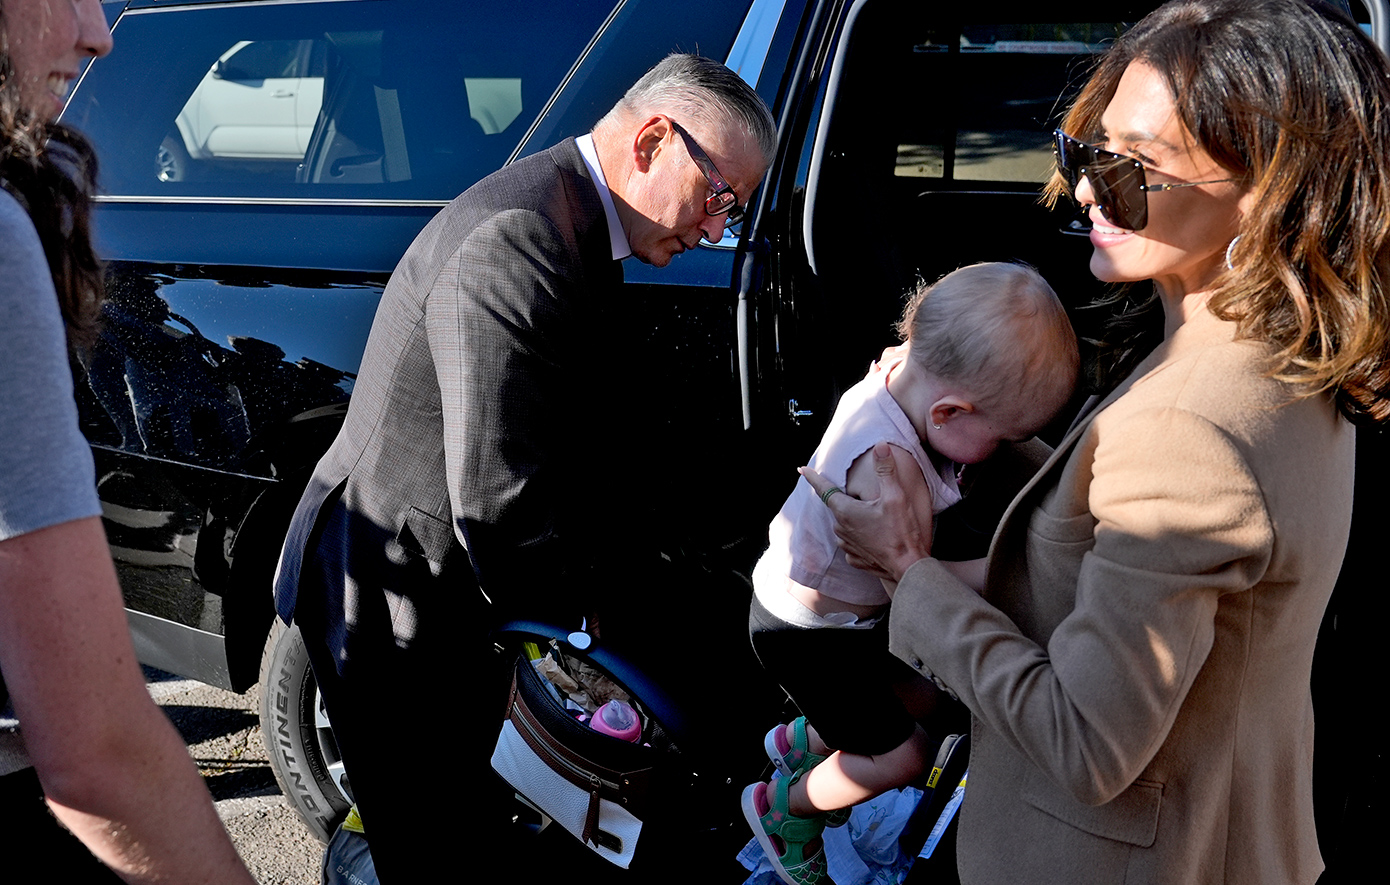 Ο Άλεκ και η Χιλάρια Μπάλντουιν στο δικαστήριο με τη 19 μηνών κόρη τους πριν τον ορισμό των ενόρκων